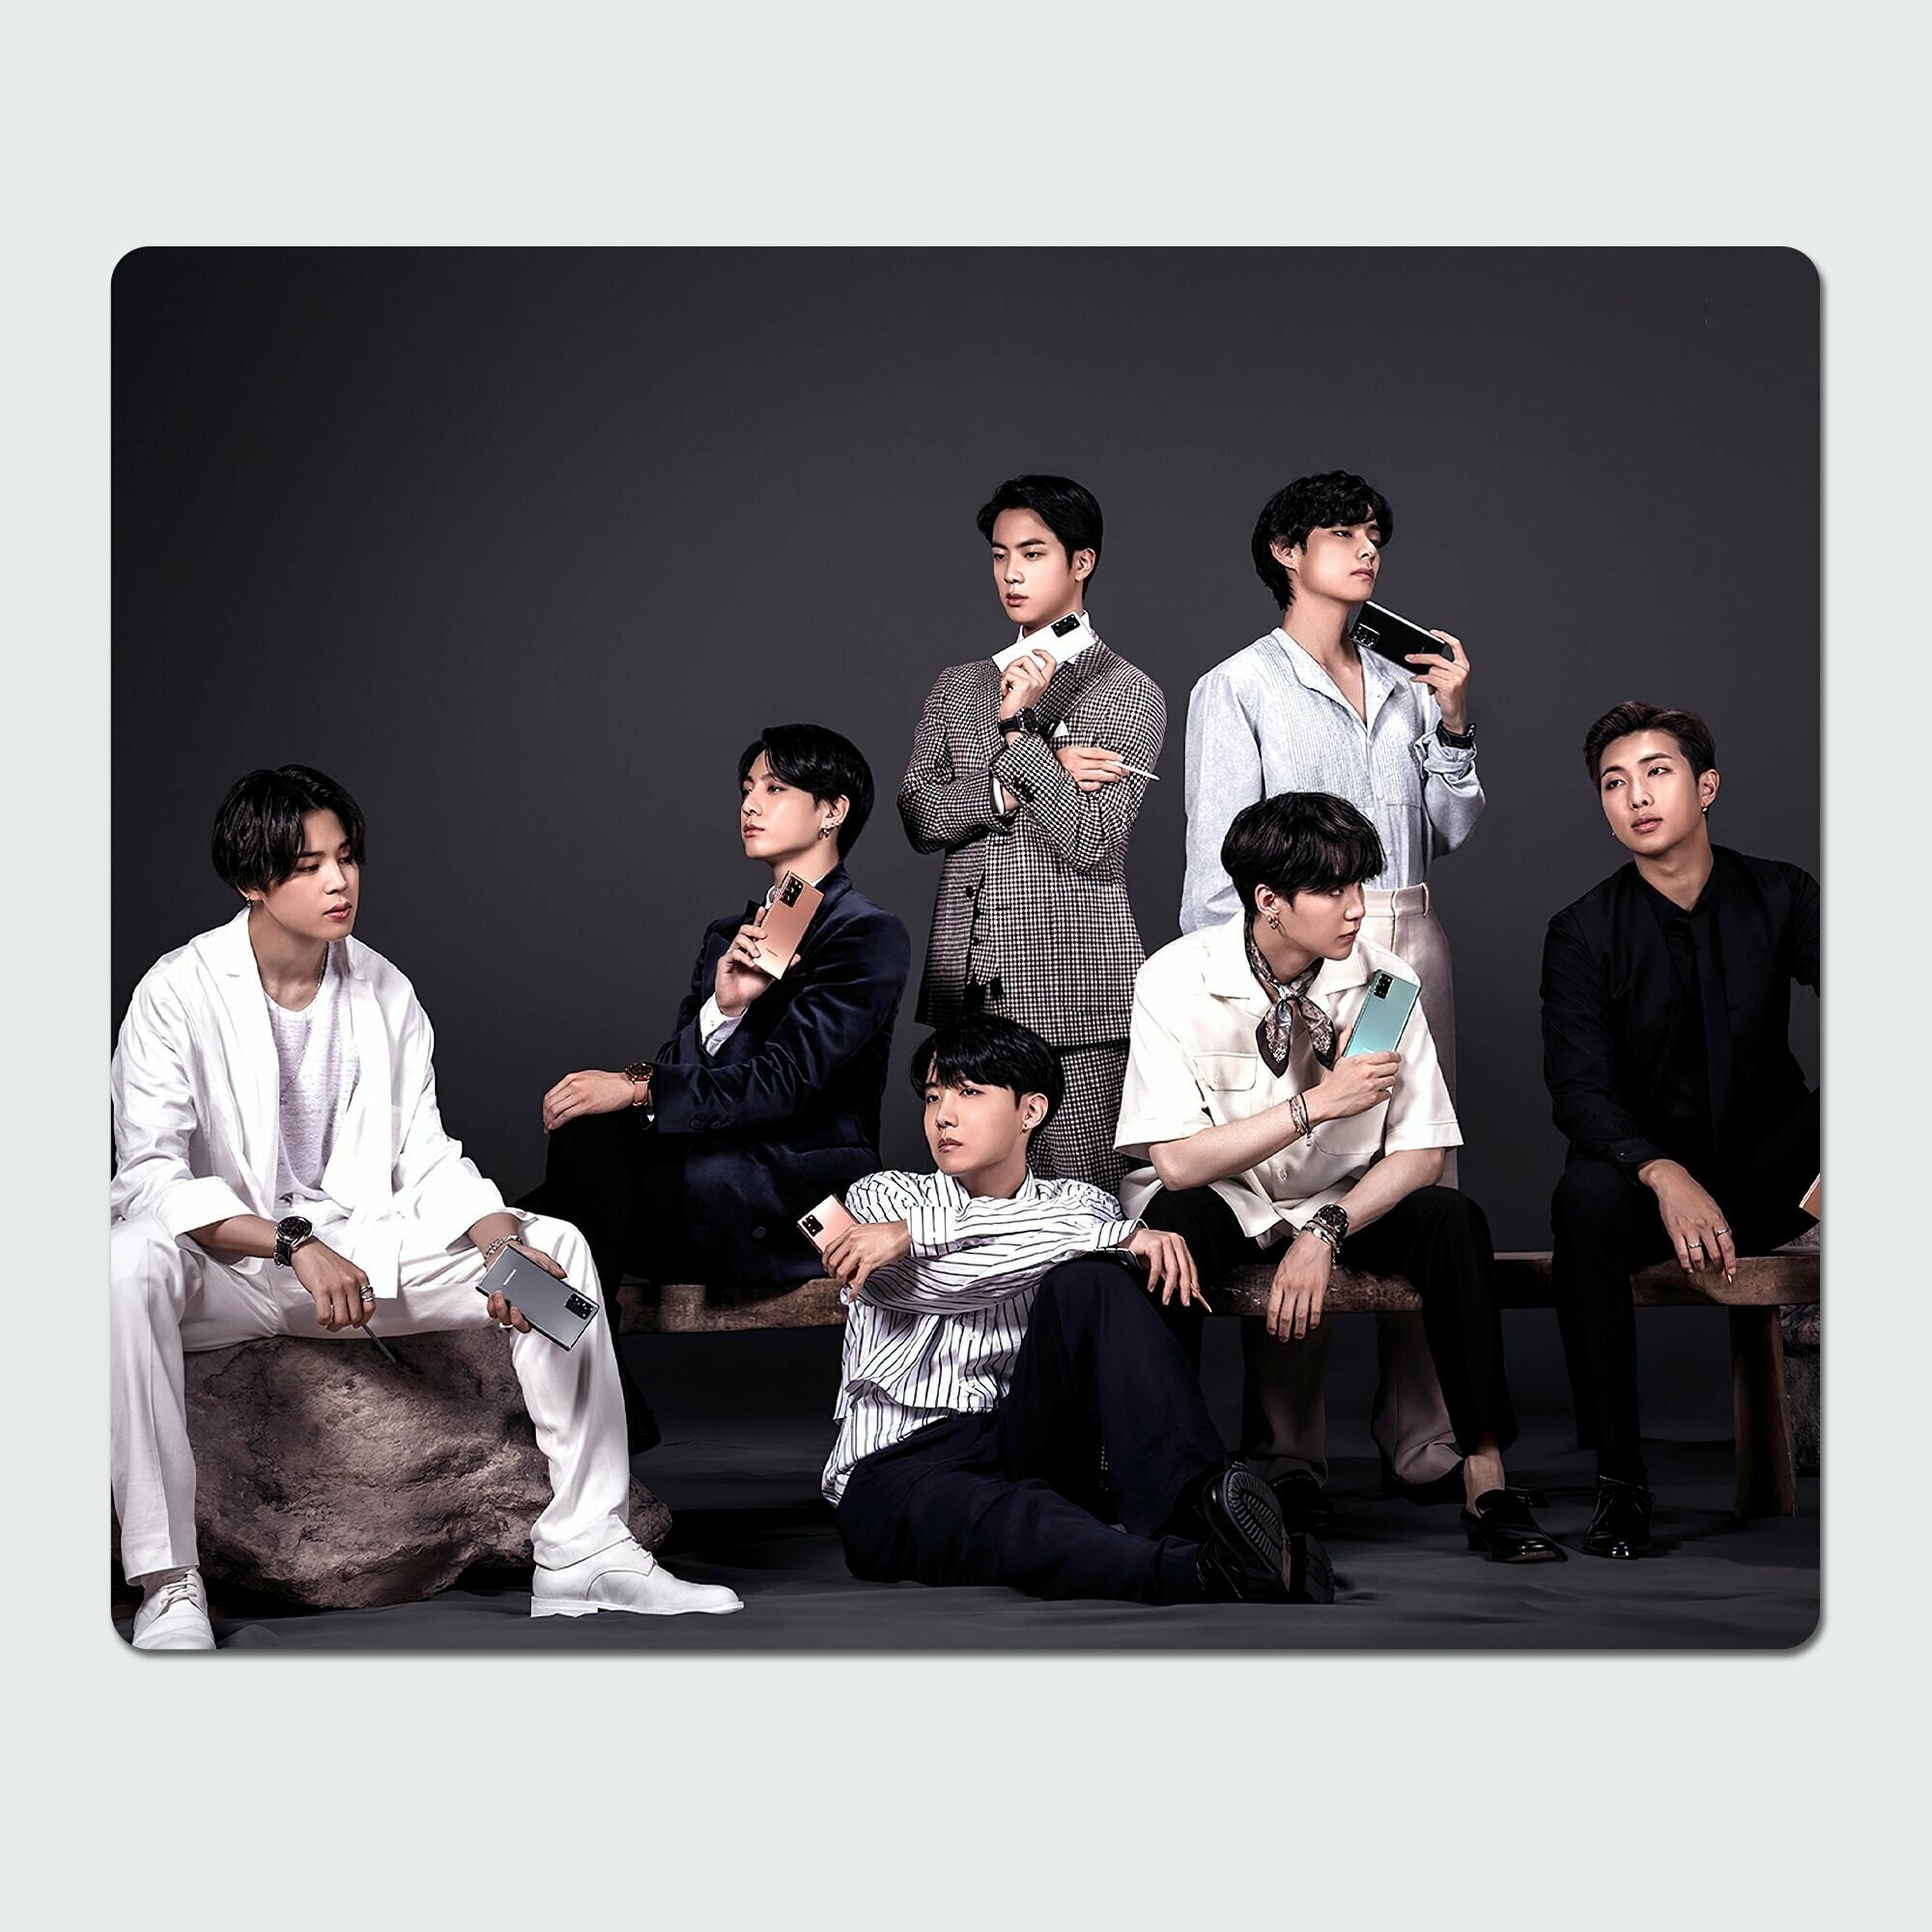 Коврик для компьютерной мышки Rocket - BTS корейская музыкальная группа 23x19 см